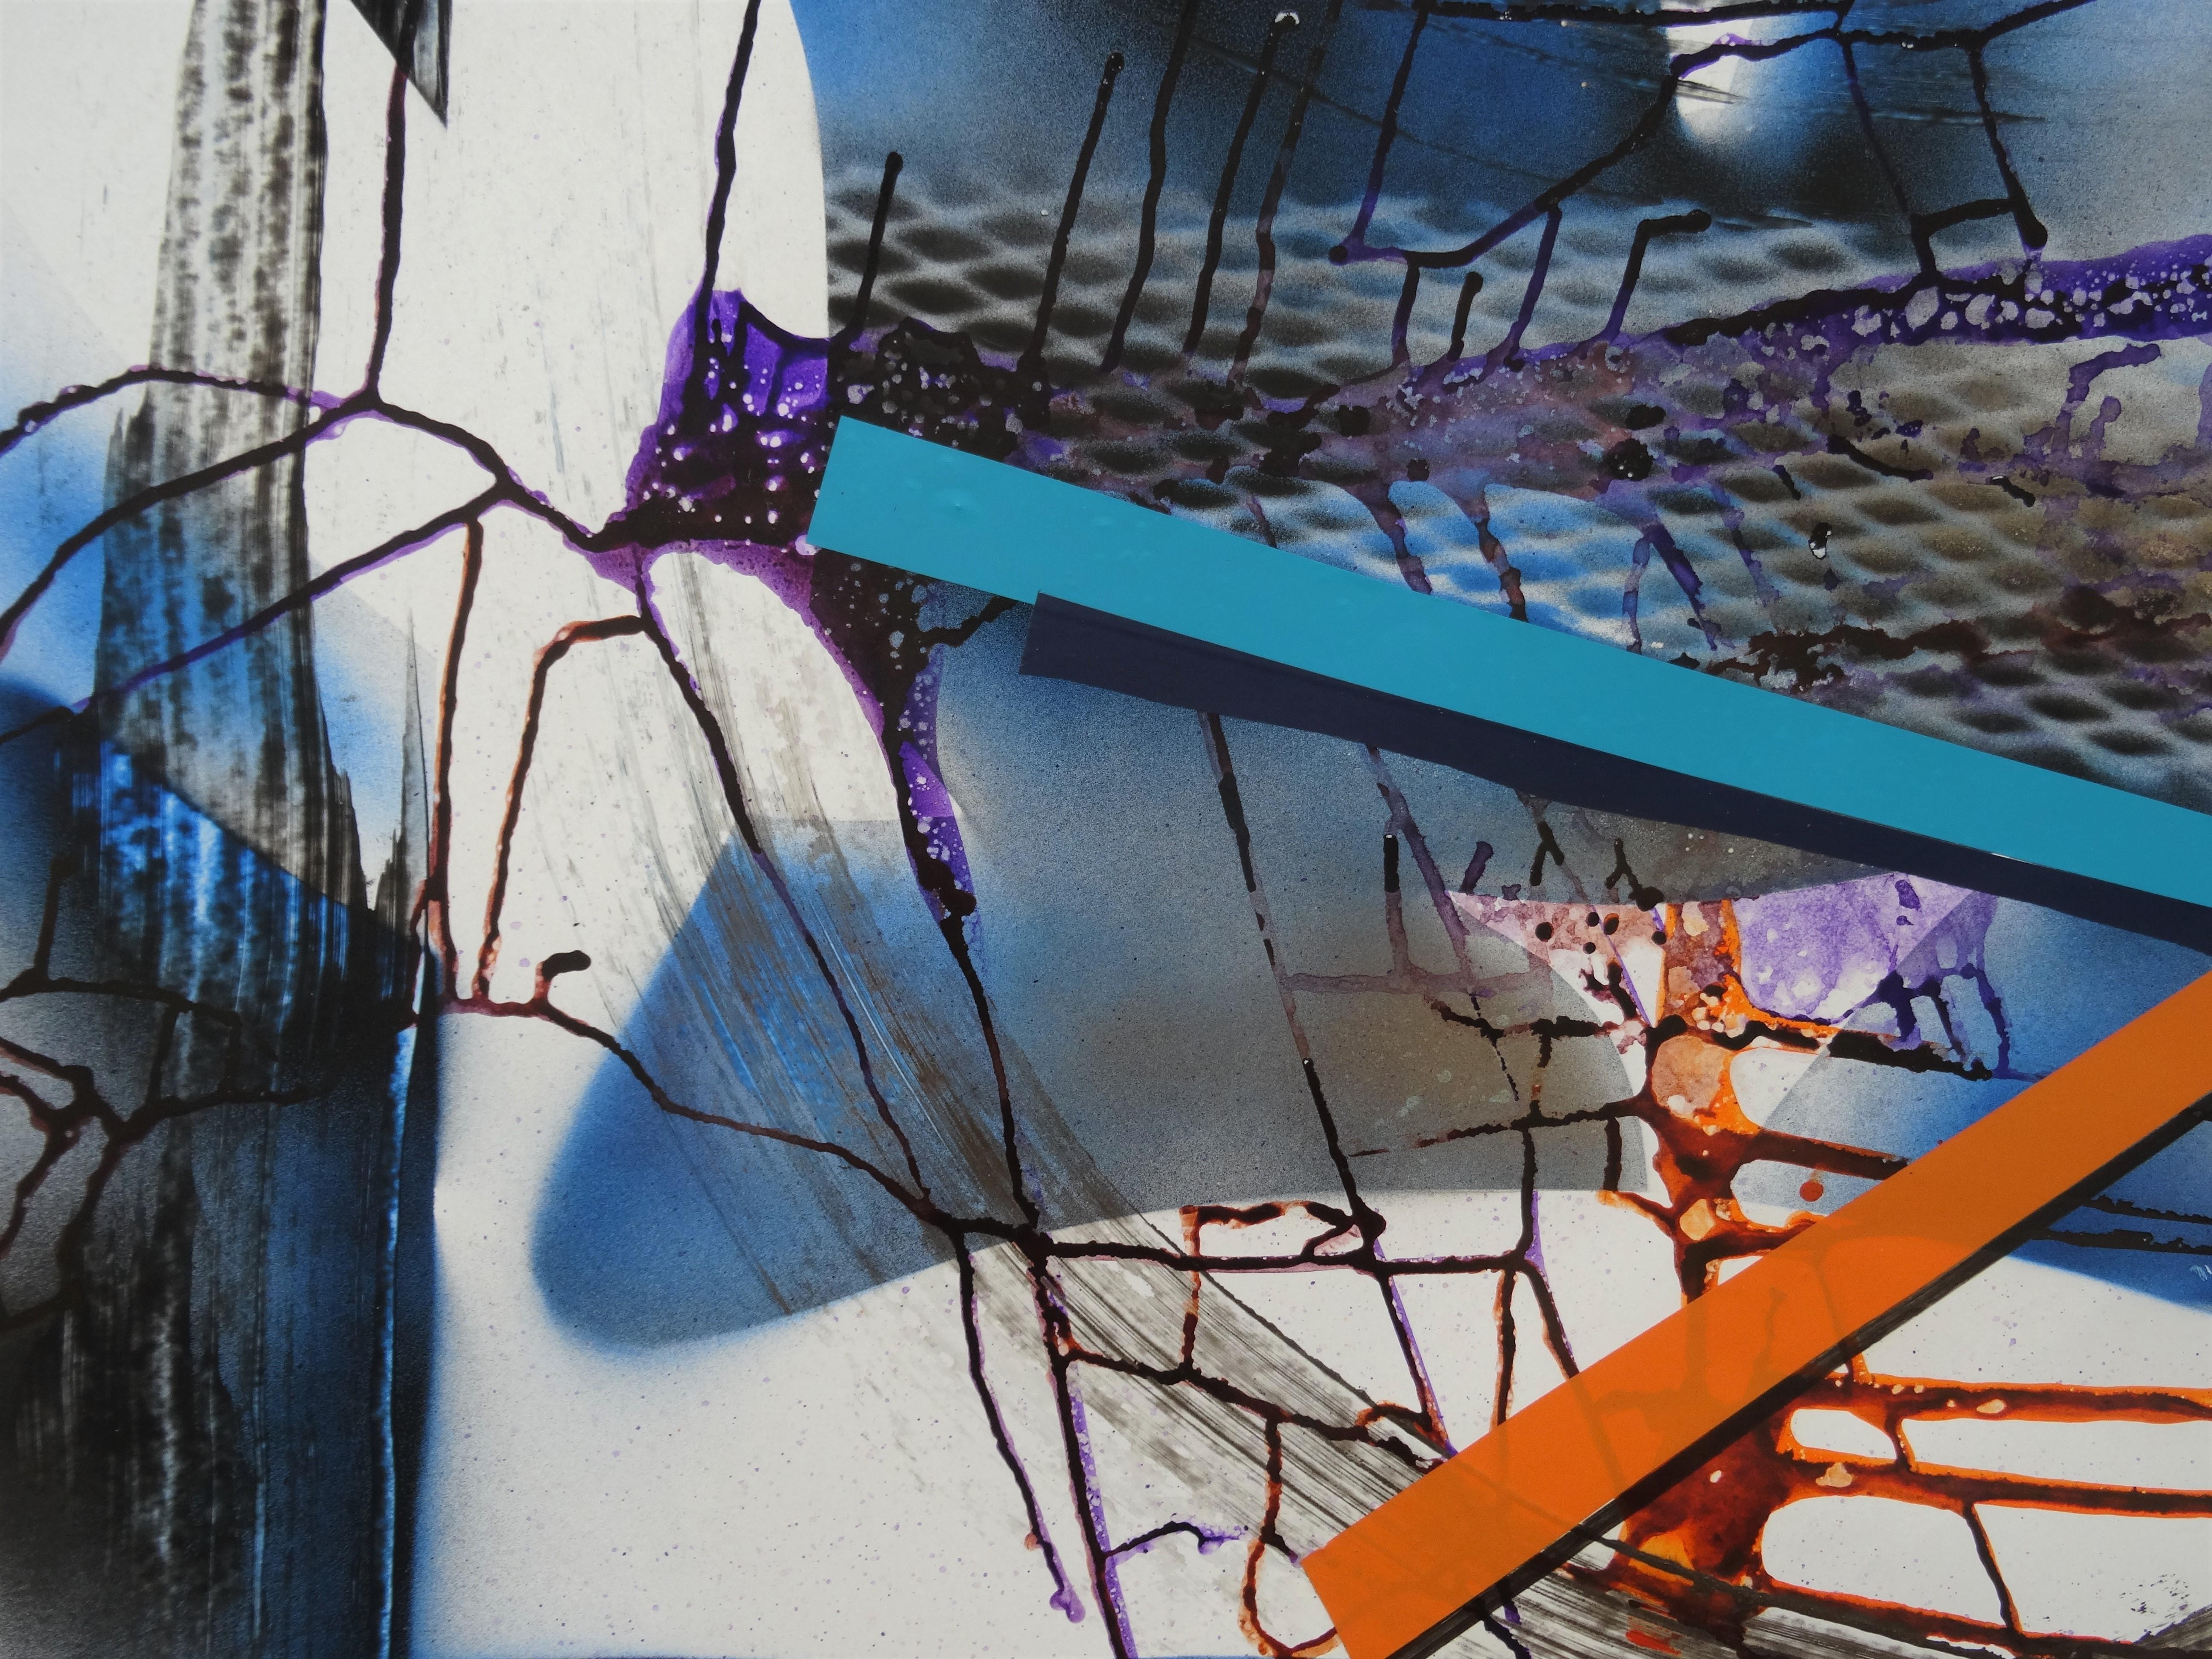 Cette série d'œuvres abstraites de grande taille, réalisées selon une technique mixte, rend hommage aux grands modernistes et expressionnistes abstraits tels que Mondrian, Kandinsky, Still et Motherwell. 

Māris Abiļevs (né le 23 avril 1956 au